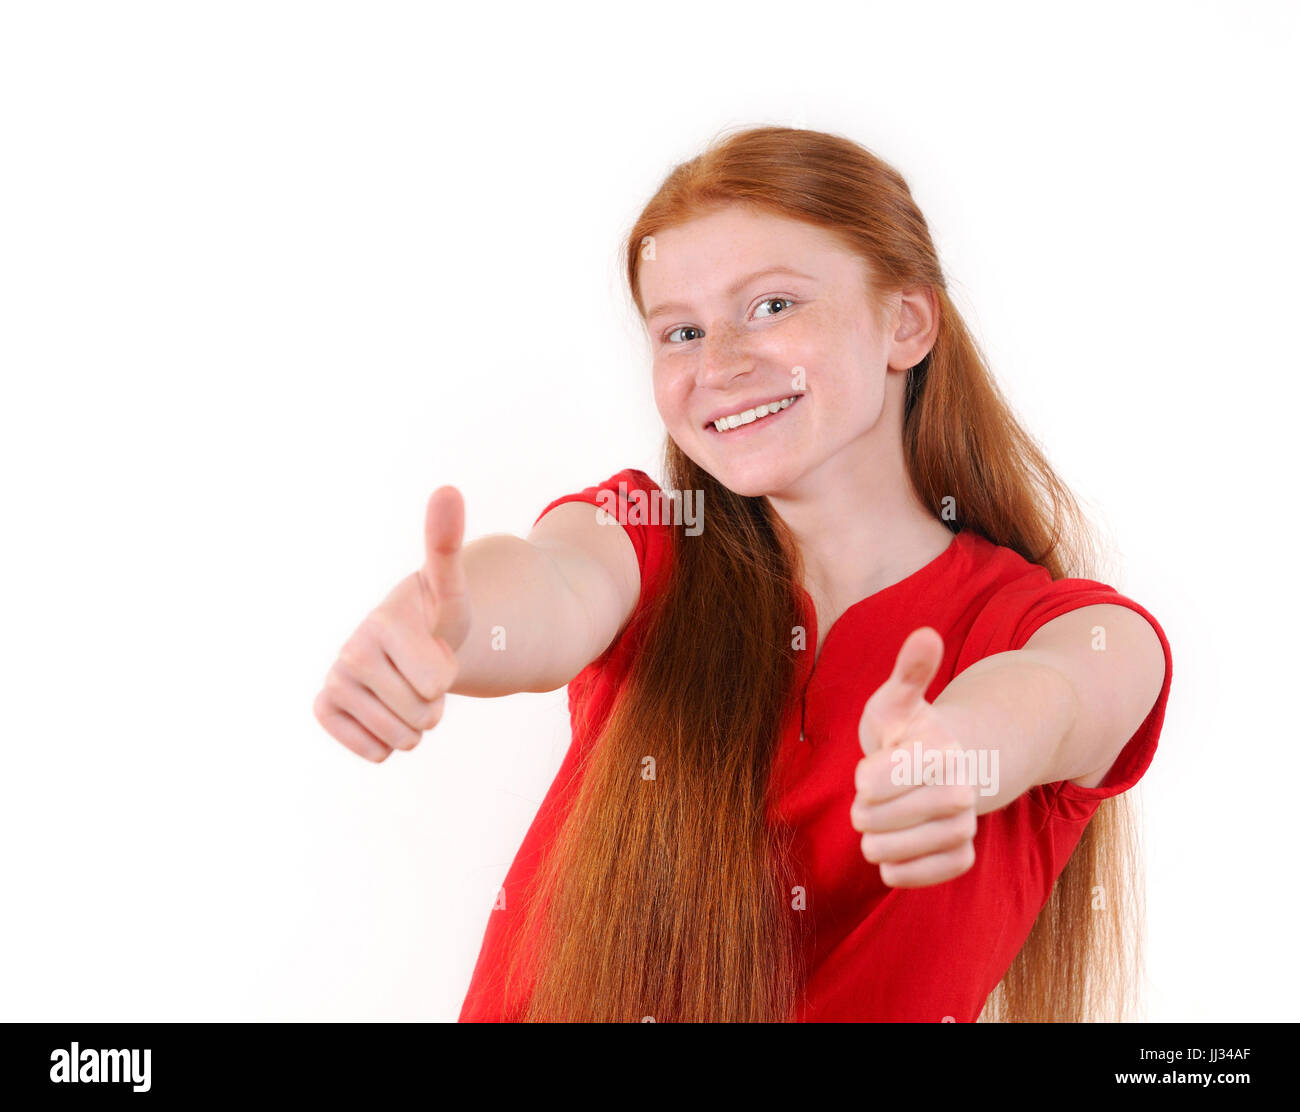 Capelli rossi ragazza adolescente in una maglietta rossa che mostra un pollice in su su sfondo bianco. Sorridenti lifestyle persone concetto. Le emozioni umane. Redhair naturale Foto Stock